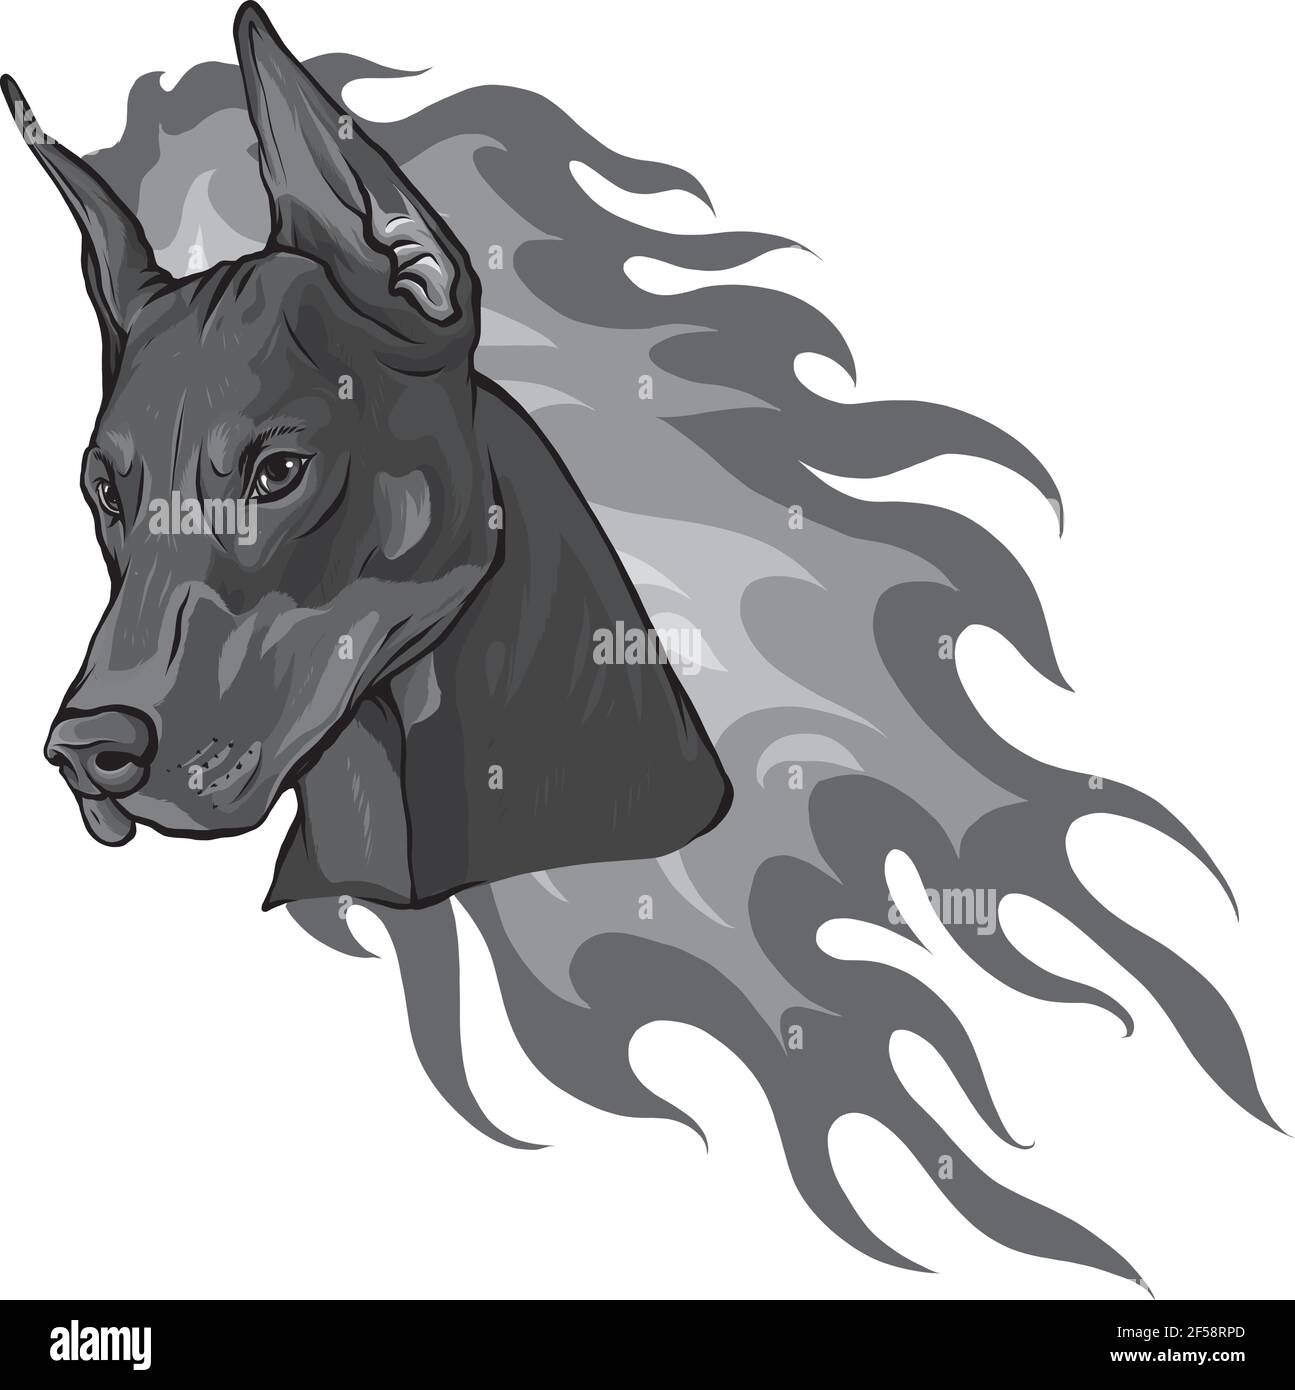 Disegno della testa del cane Dobermann con illustrazione vettoriale delle fiamme Illustrazione Vettoriale